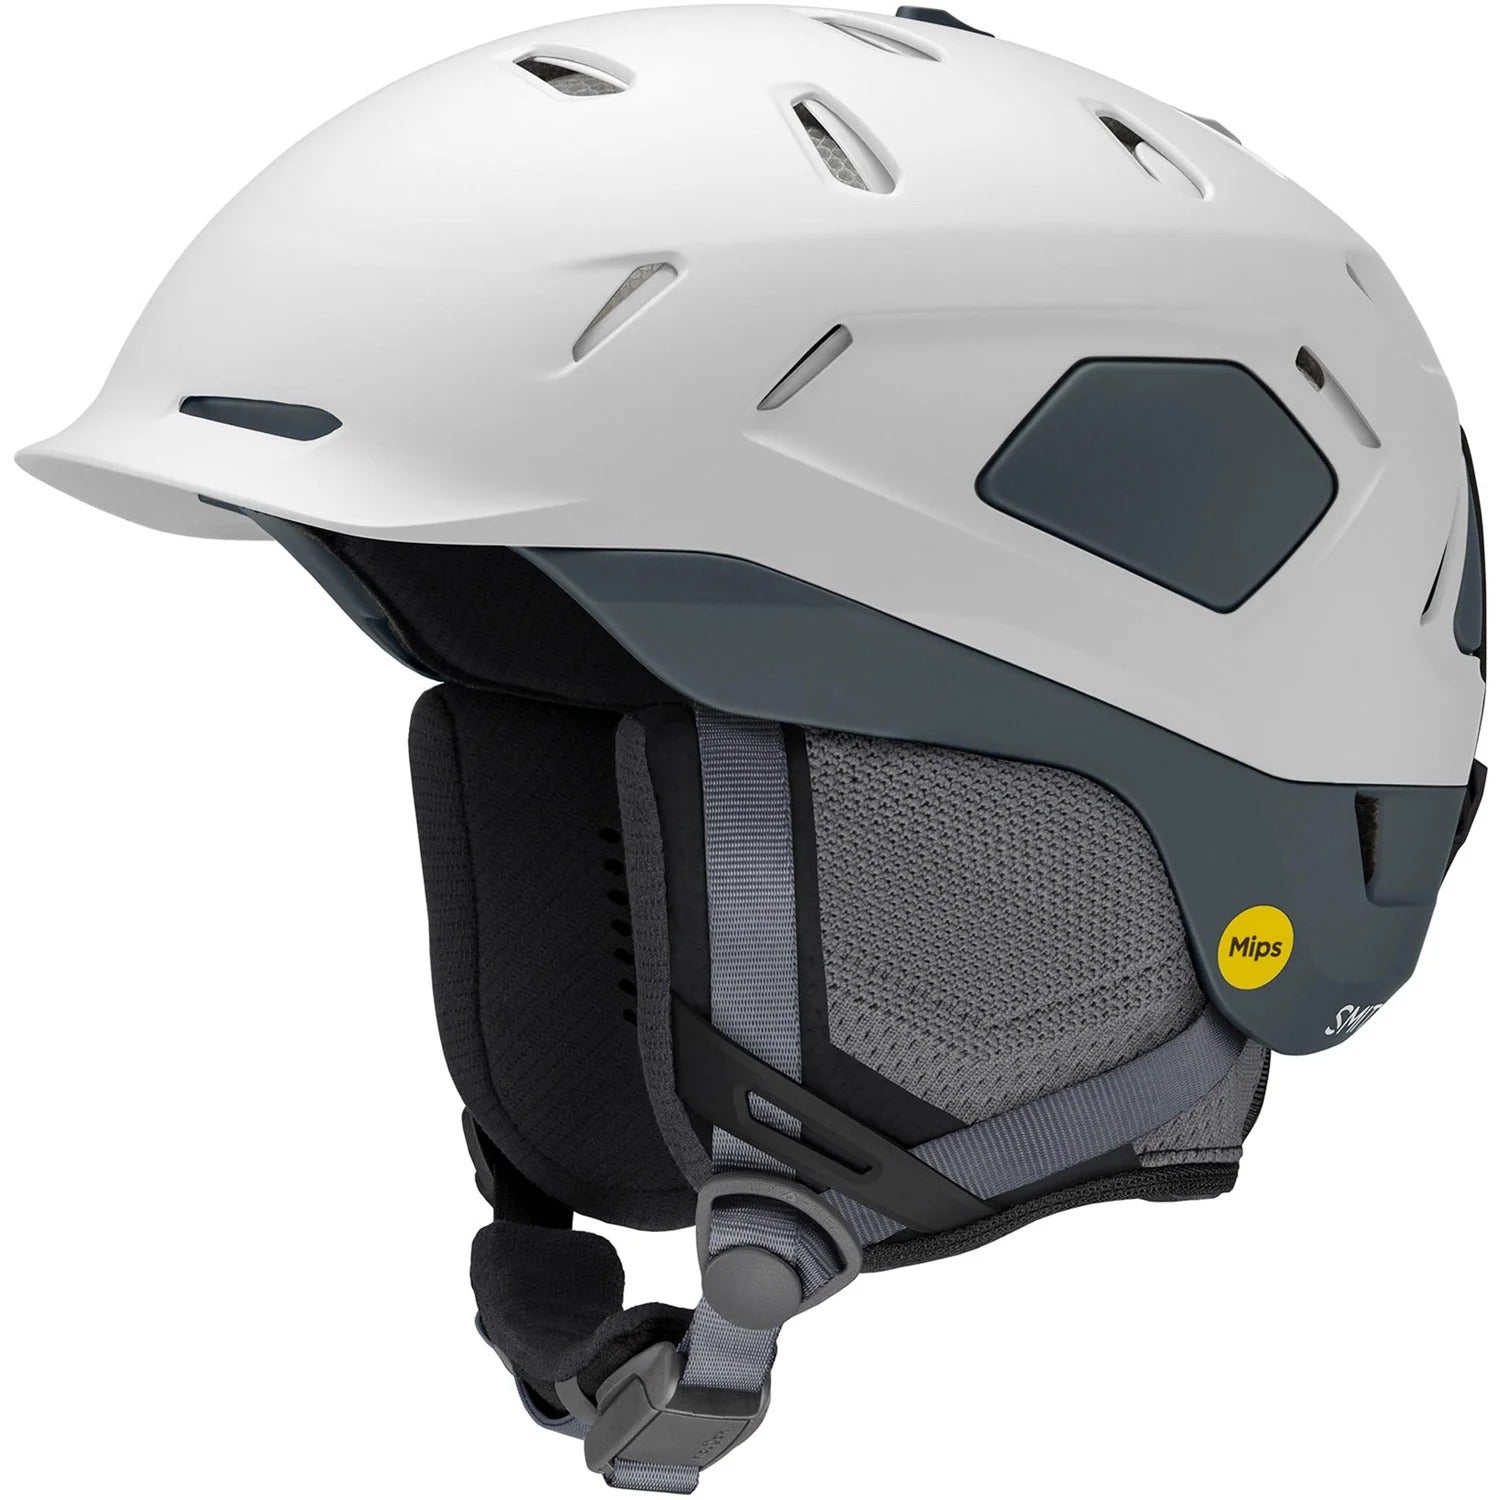 Nexus Mips Snow Helmet